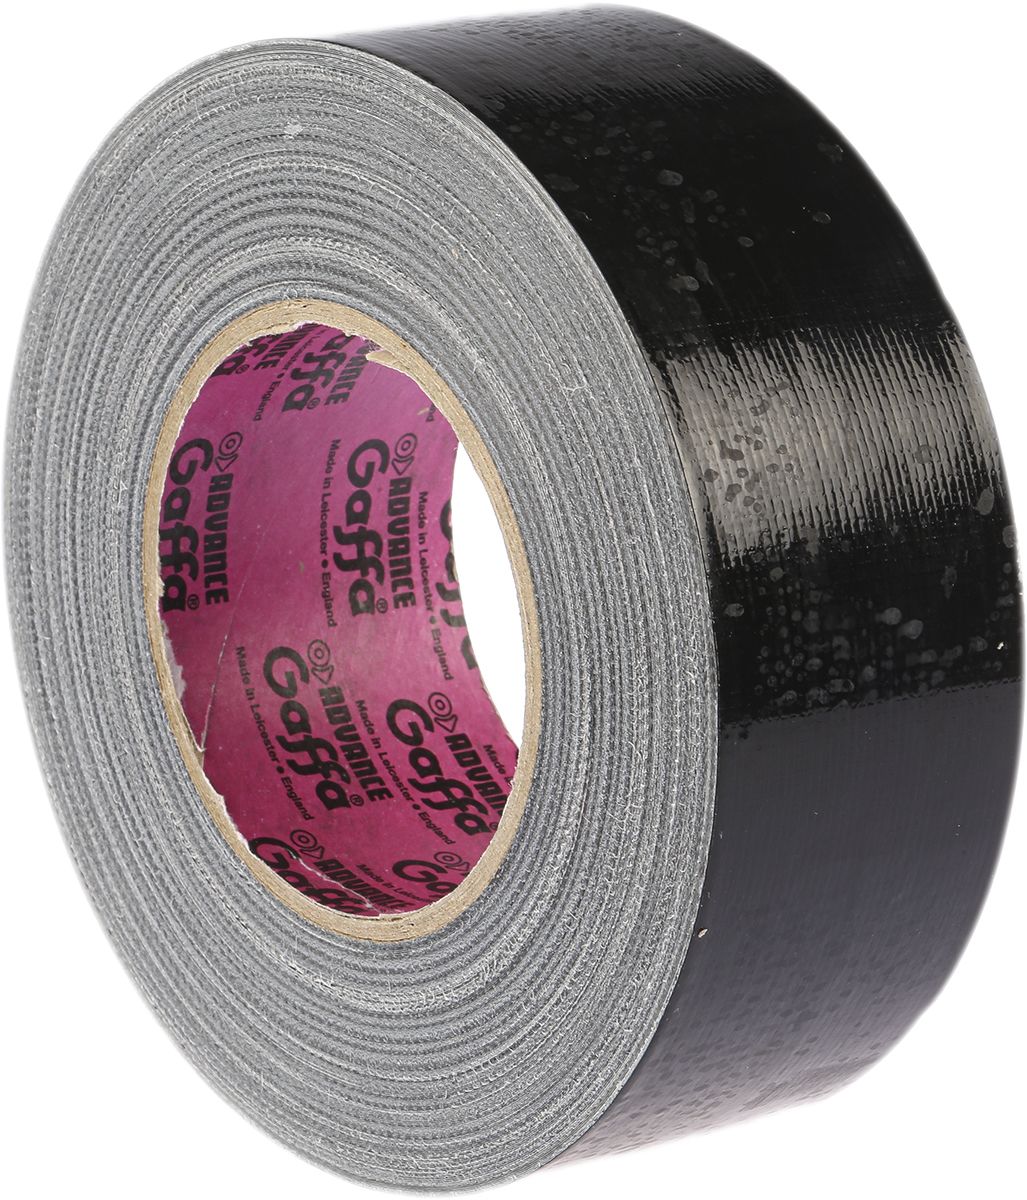 Resina di gomma Nastro Gaffa Nero Advance Tapes, 50mm x 50m, spessore 0.22mm, Gloss AT202